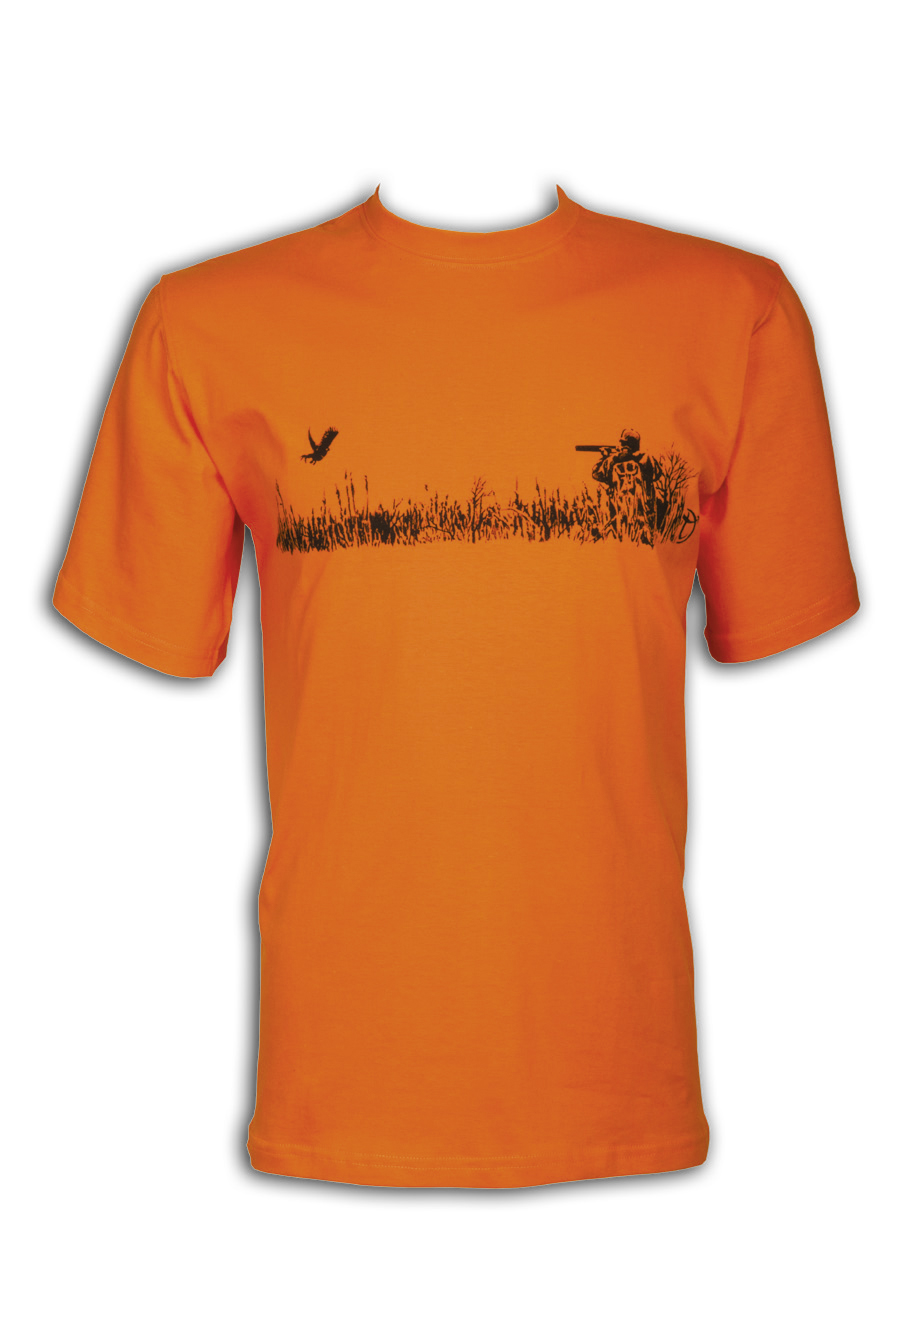 Toxotis T-shirt Orange 050